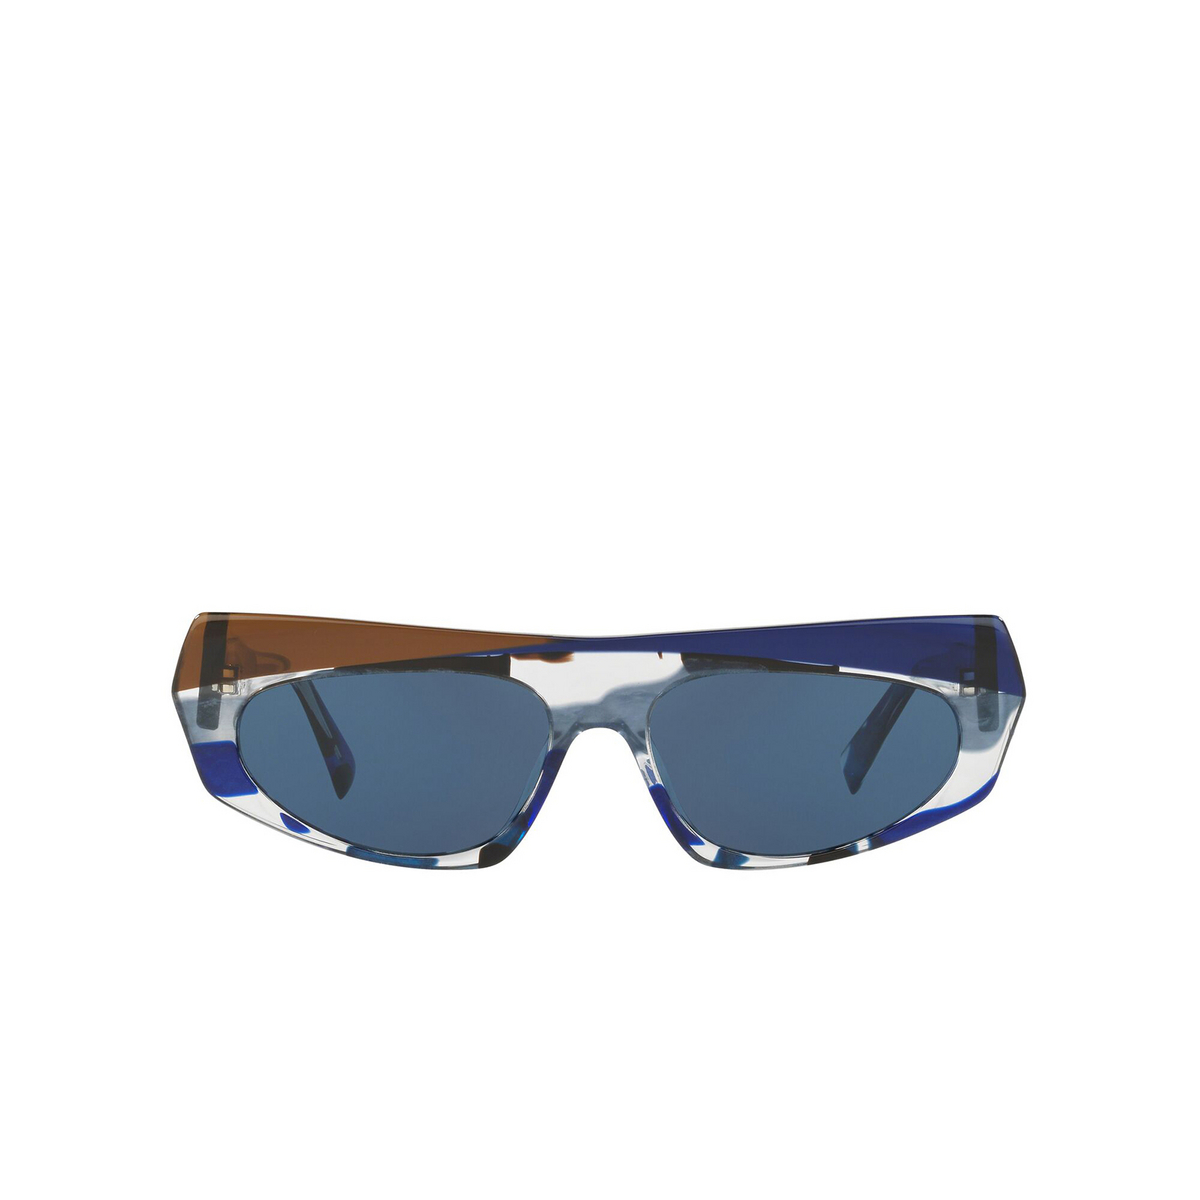 Alain Mikli® Irregular Sunglasses: Pose A05041 color Blue Waves / Cob Blue / Espresso 005/80 - front view.